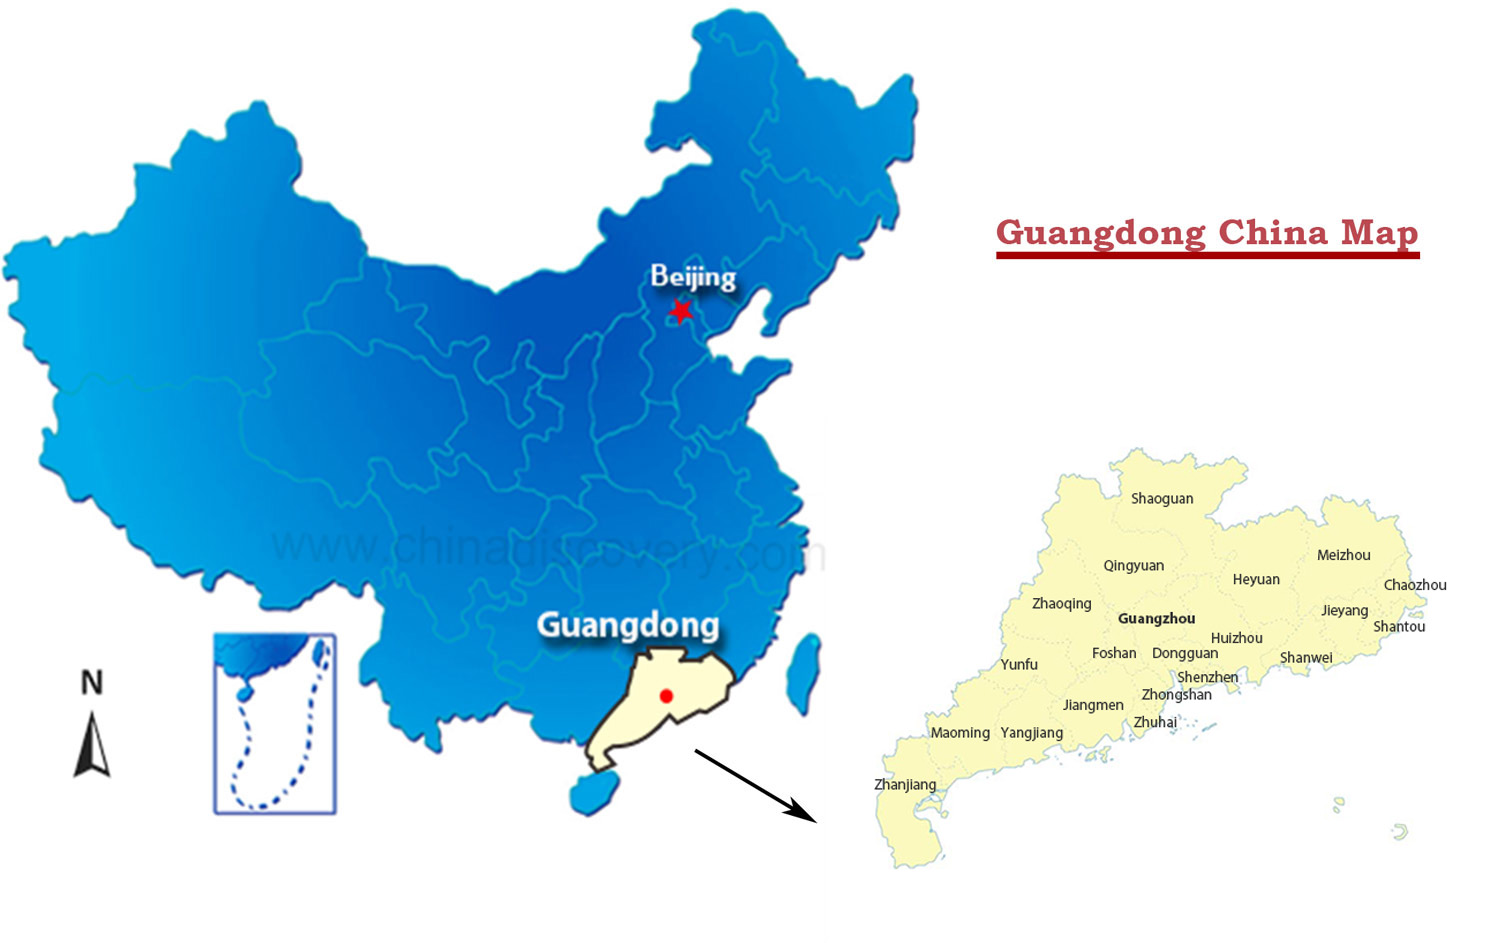 Guangdong China Map 1500 